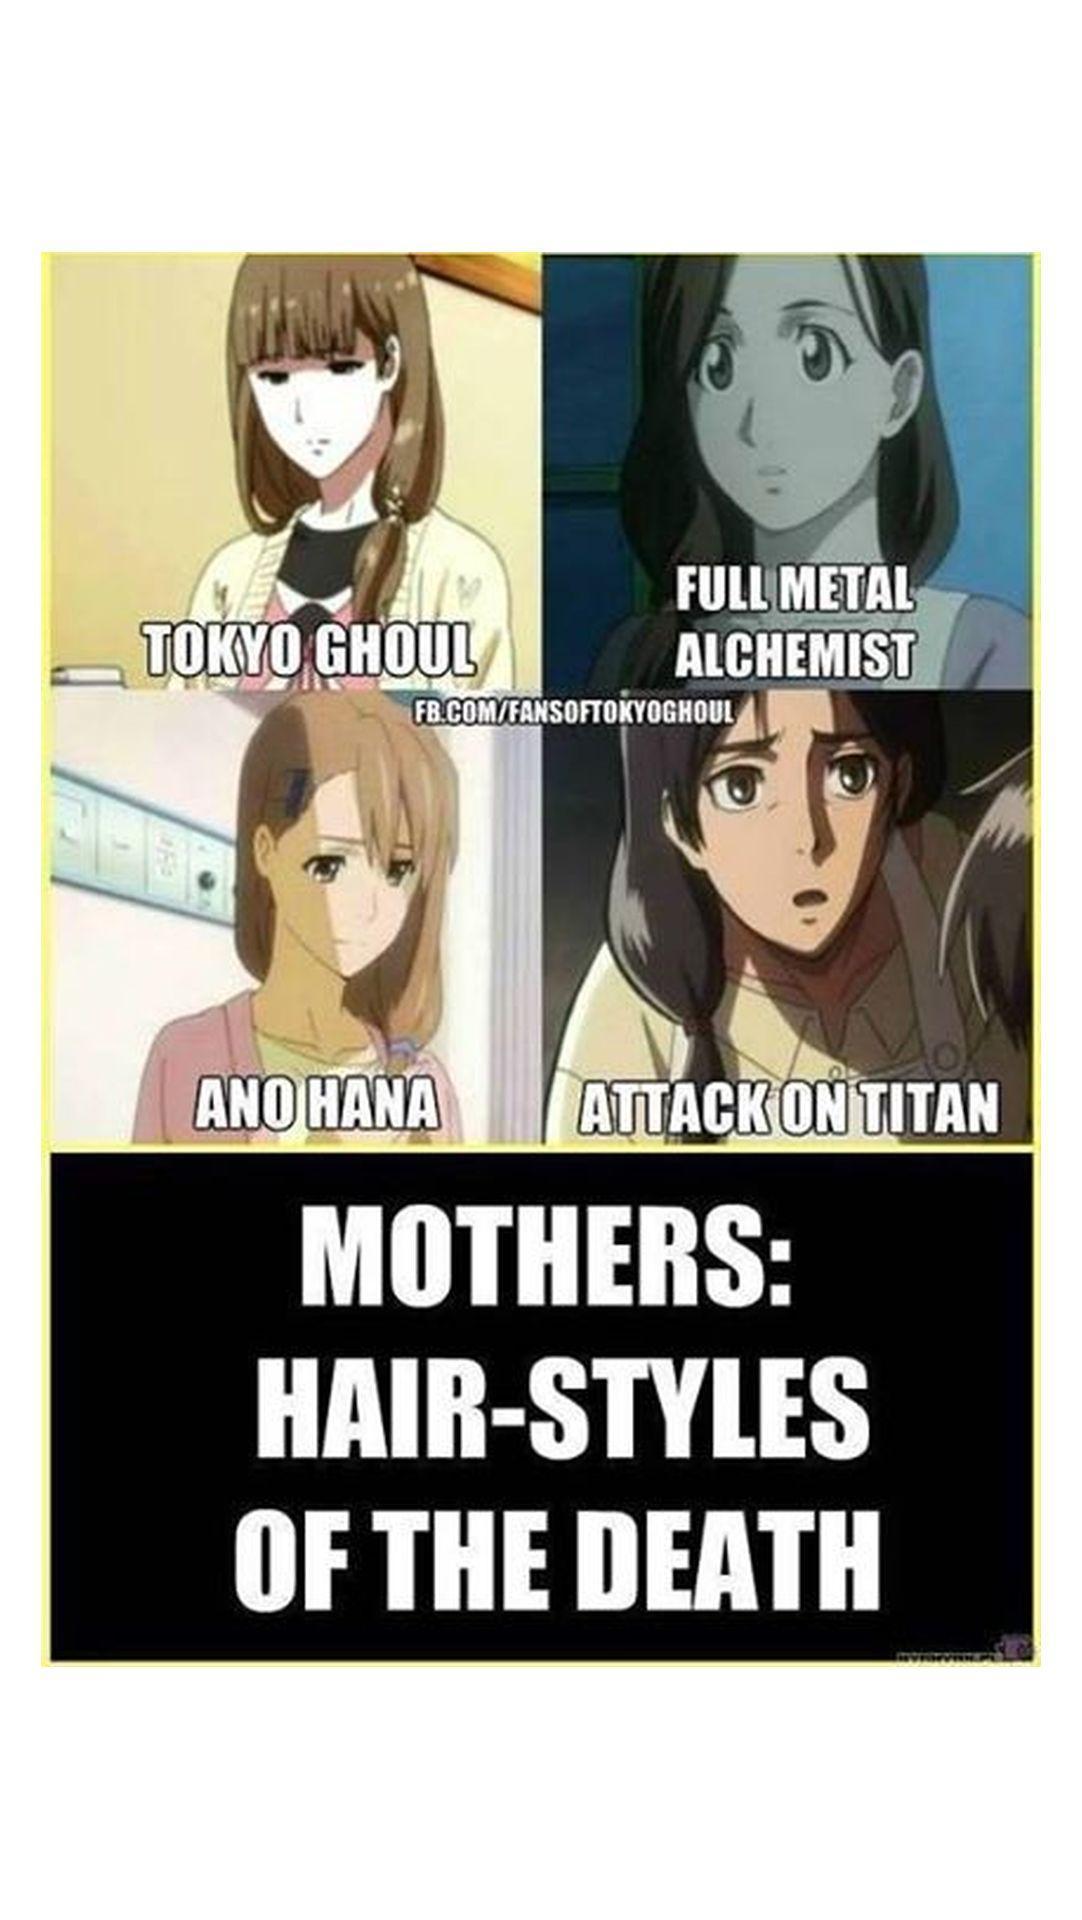 Anime Memes, Anime Wallpaper, Anime Aesthetic